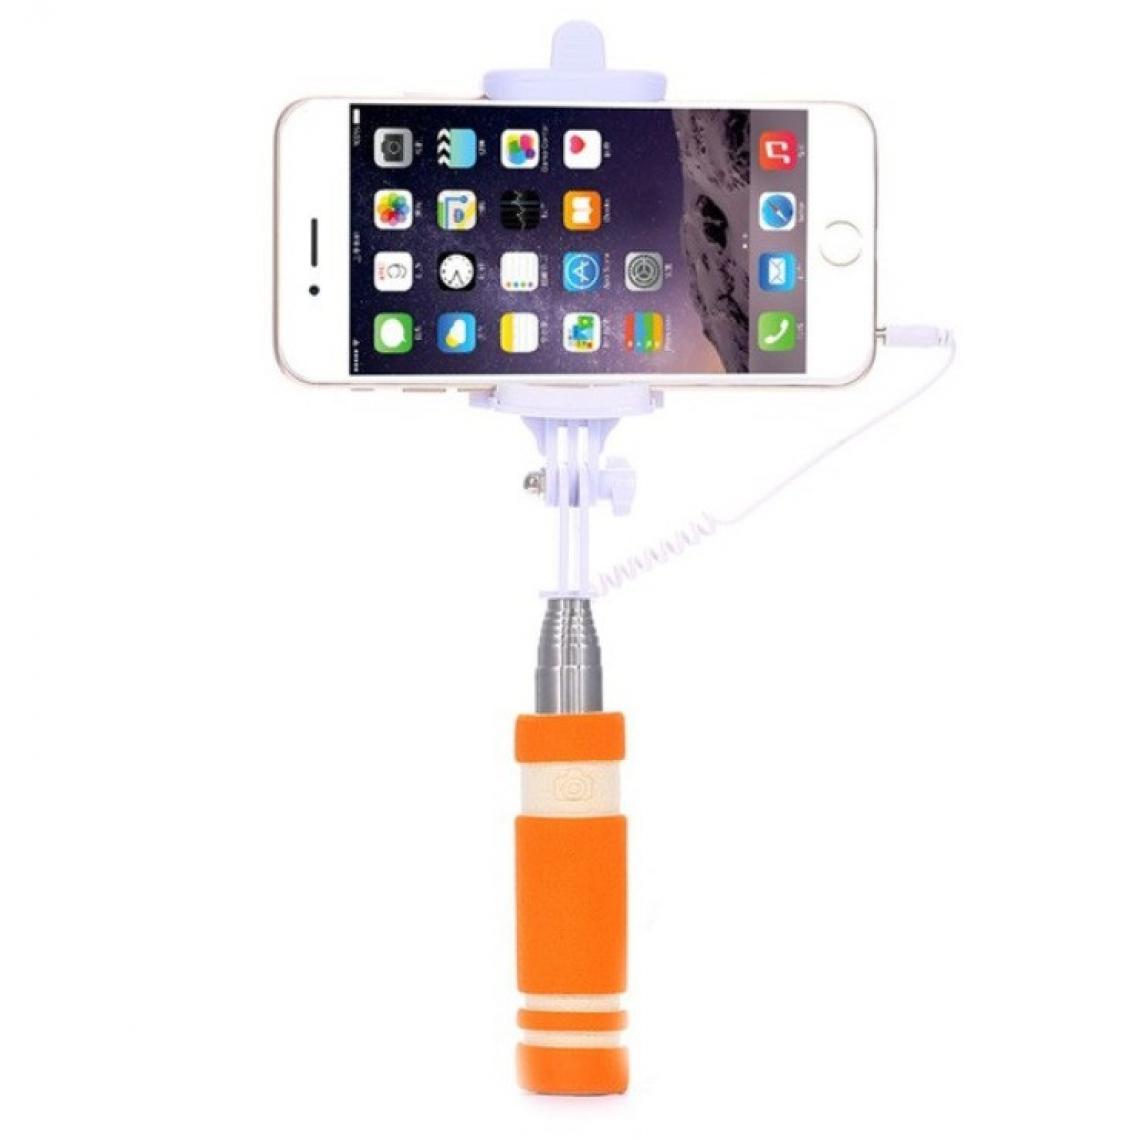 Shot - Mini Perche Selfie pour SAMSUNG Galaxy A51 Smartphone avec Cable Jack Selfie Stick Android IOS Reglable Bouton Photo (ORANGE) - Autres accessoires smartphone